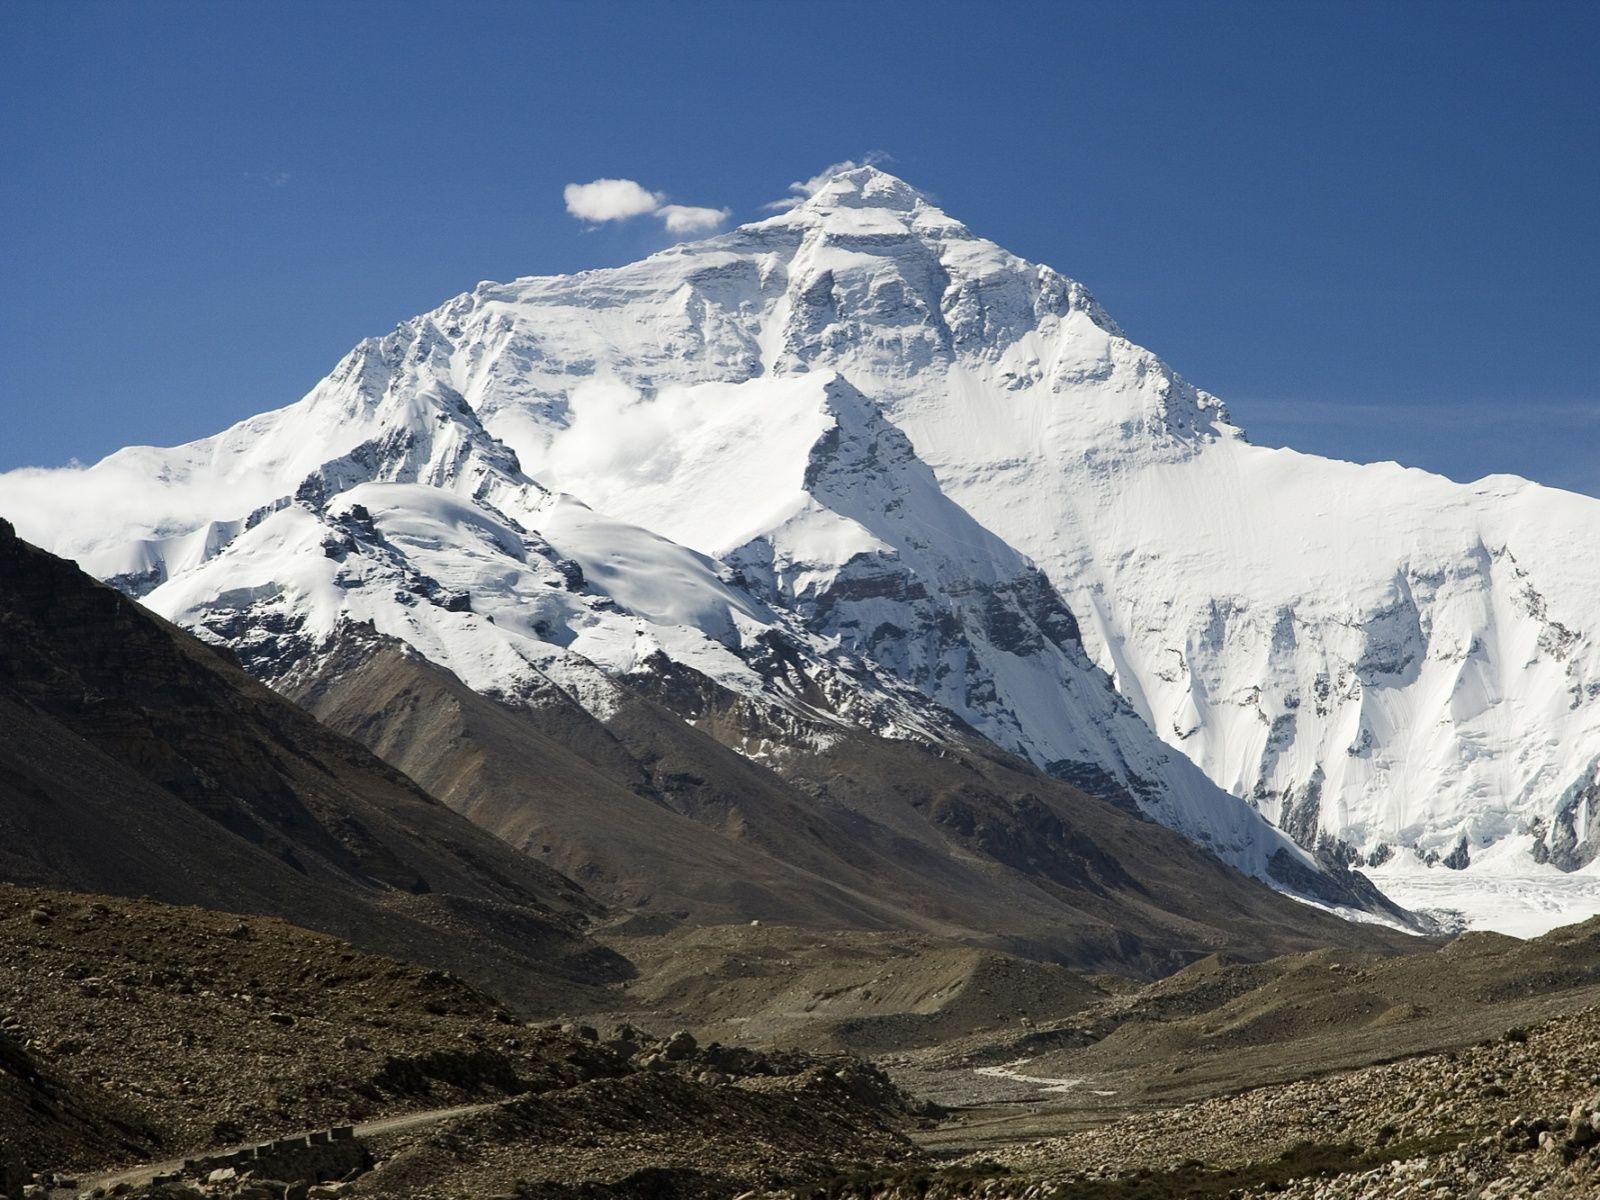 4K Wallpapers » Wallpapers » Mount Everest